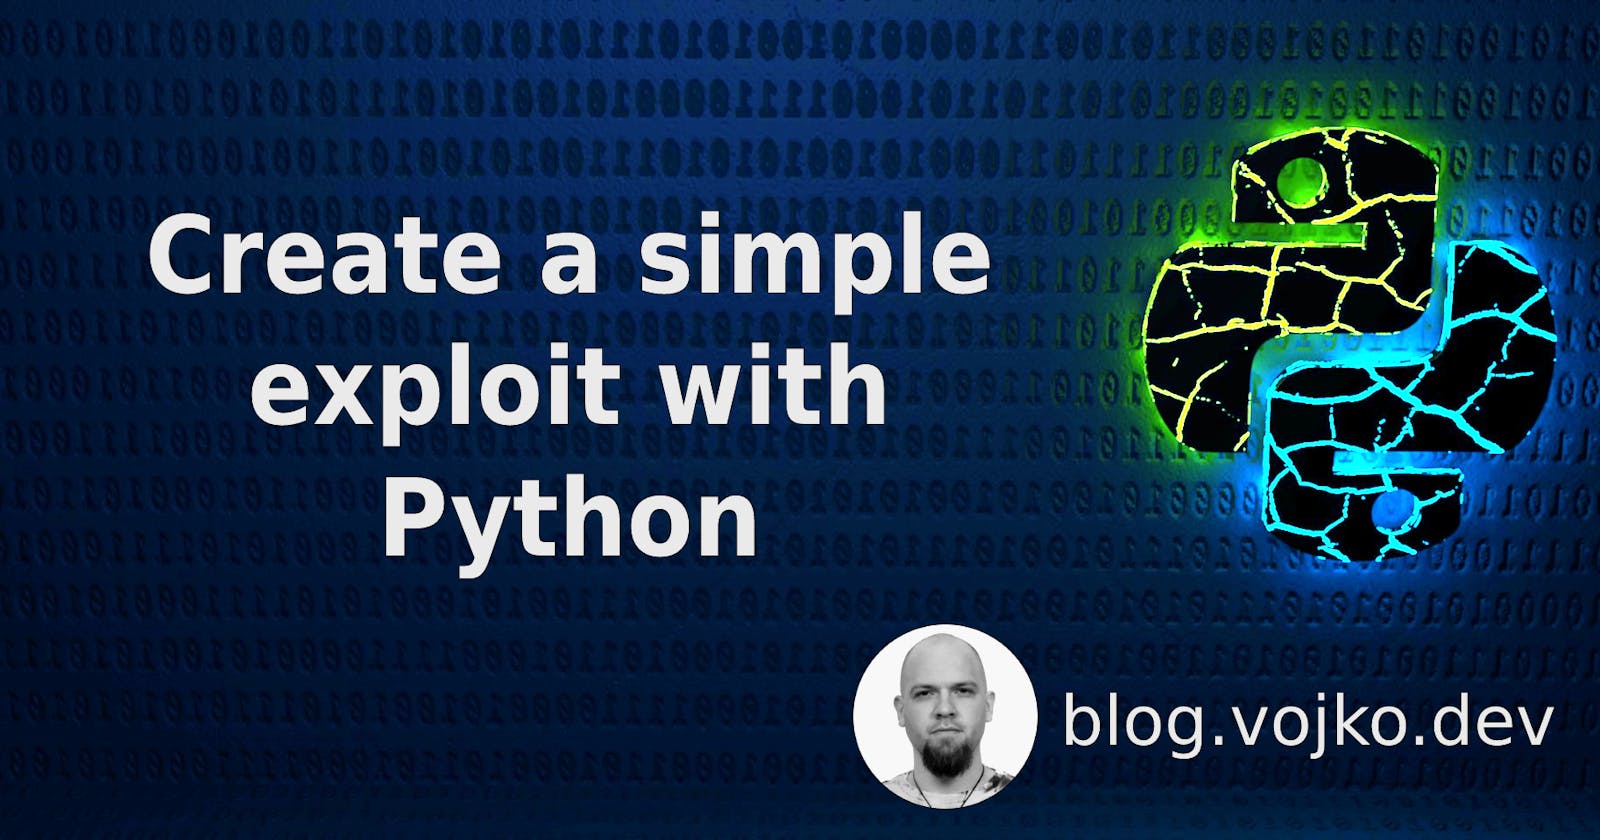 Create a simple exploit with Python